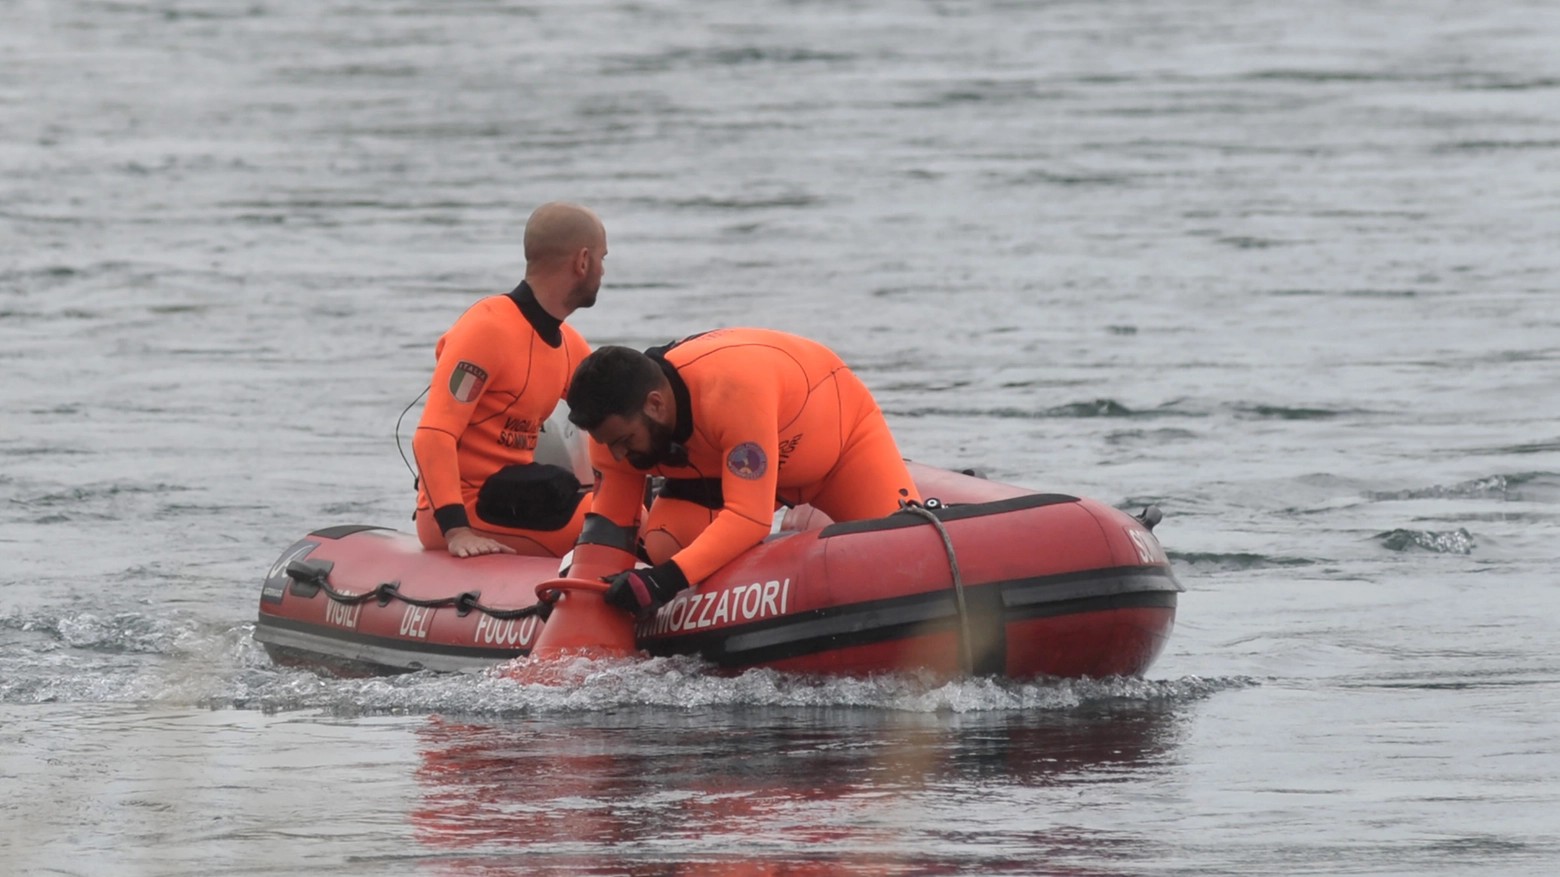 I corpi di padre e figlio sono stati recuperati nel fiume Trebbia, a Piacenza,  dai sommozzatori dei vigili del fuoco (archivio)